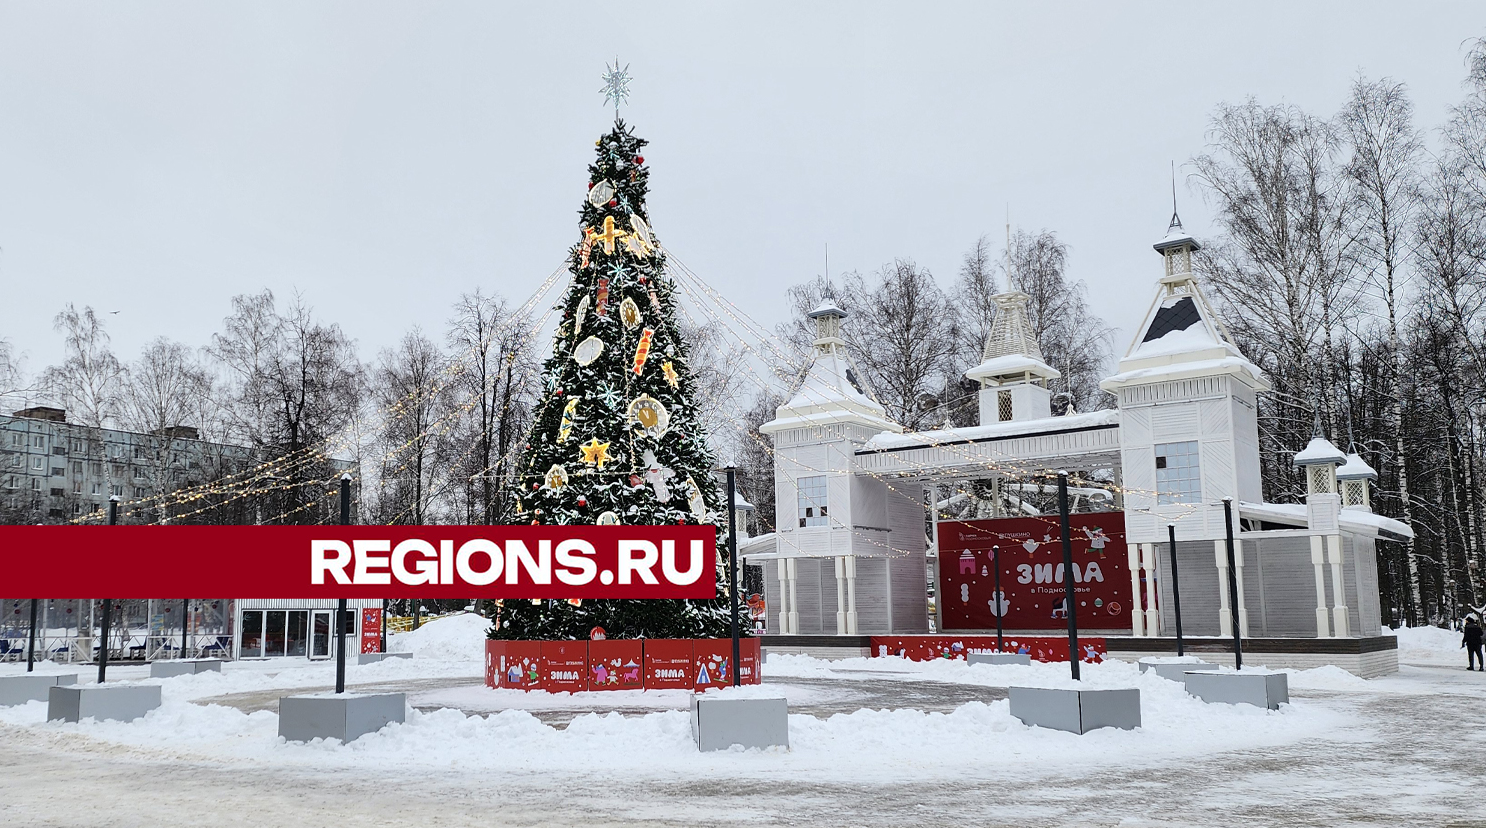 Городской парк в Пушкино привлекает гостей яркими мероприятиями и инфраструктурой